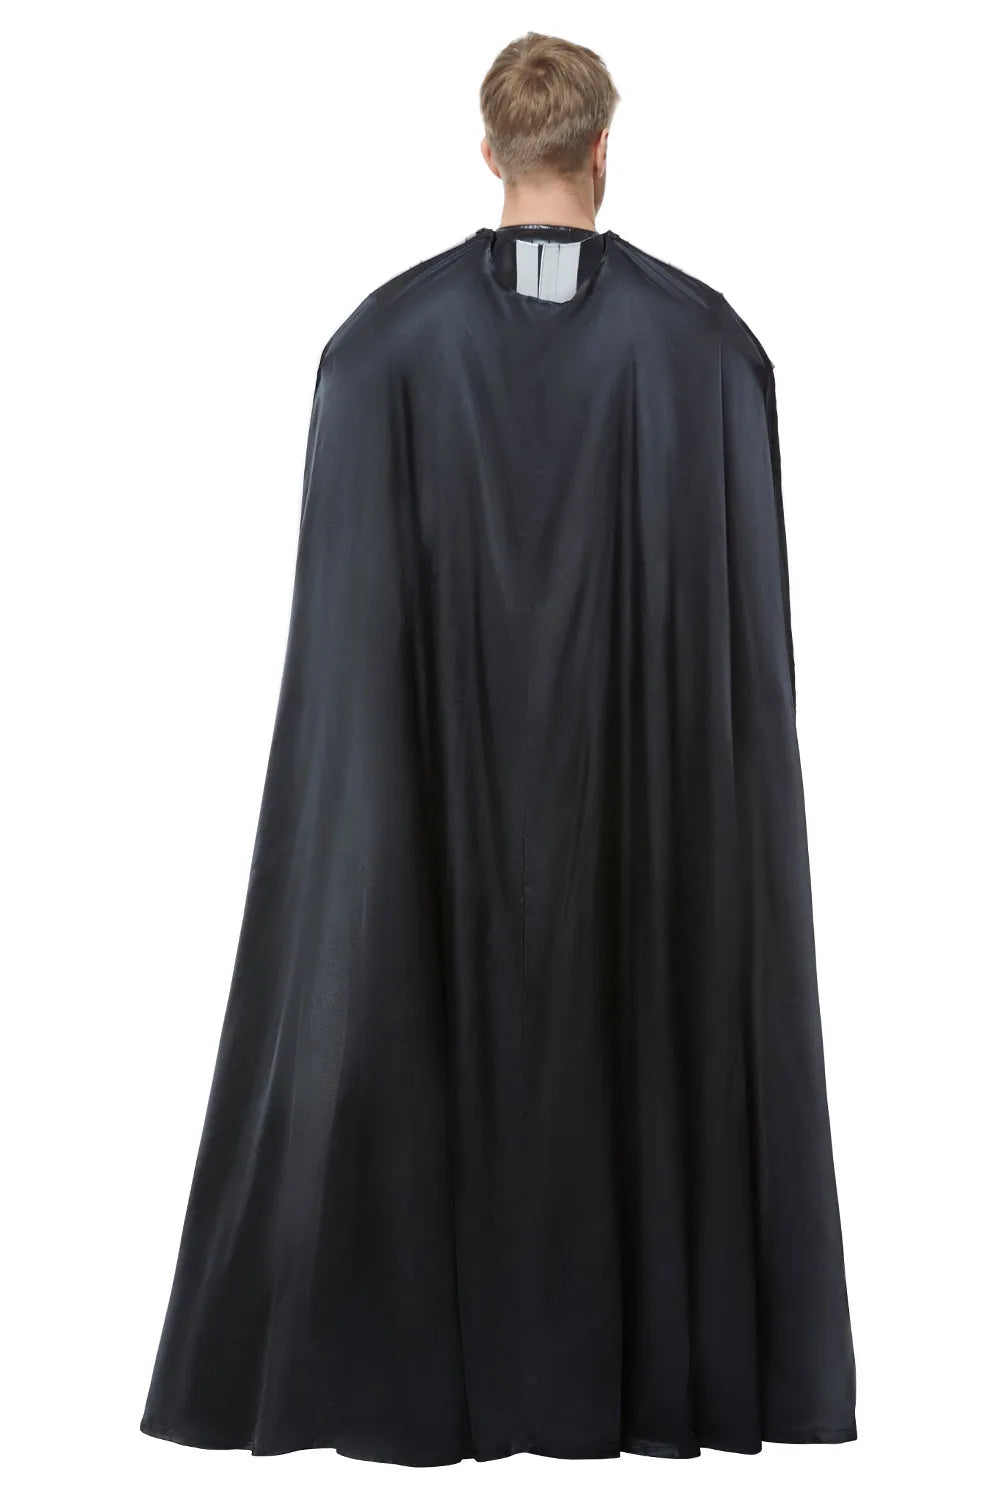 Costume de Cosplay Anime, combinaison gilet cape, uniforme noir fantaisie pour hommes et garçons, Costume de déguisement de fête de carnaval d'halloween